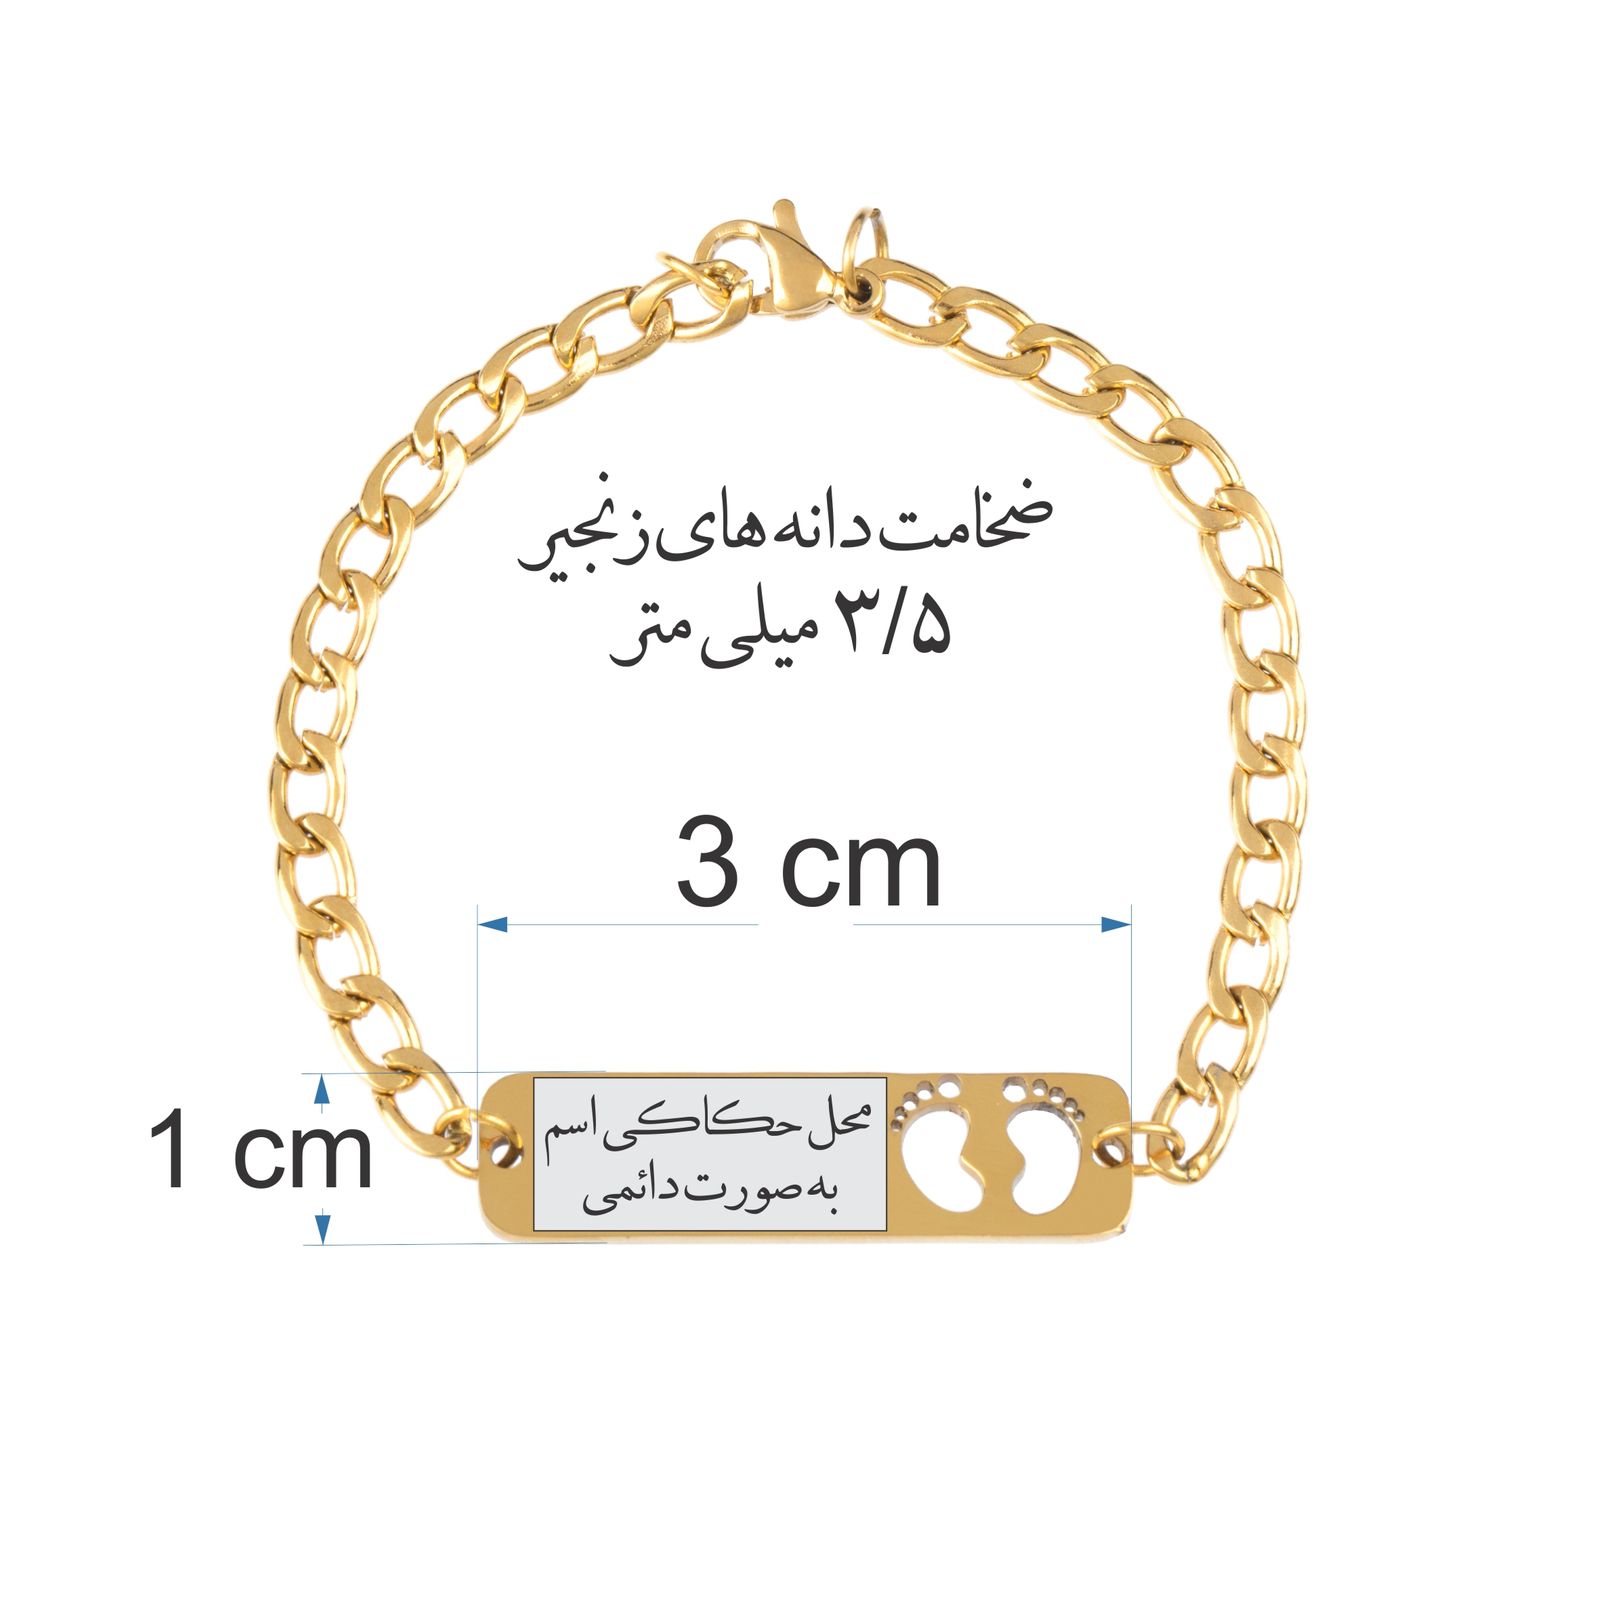 دستبند دخترانه گيلواره زراوشان مدل اسم الین کد B101 -  - 3